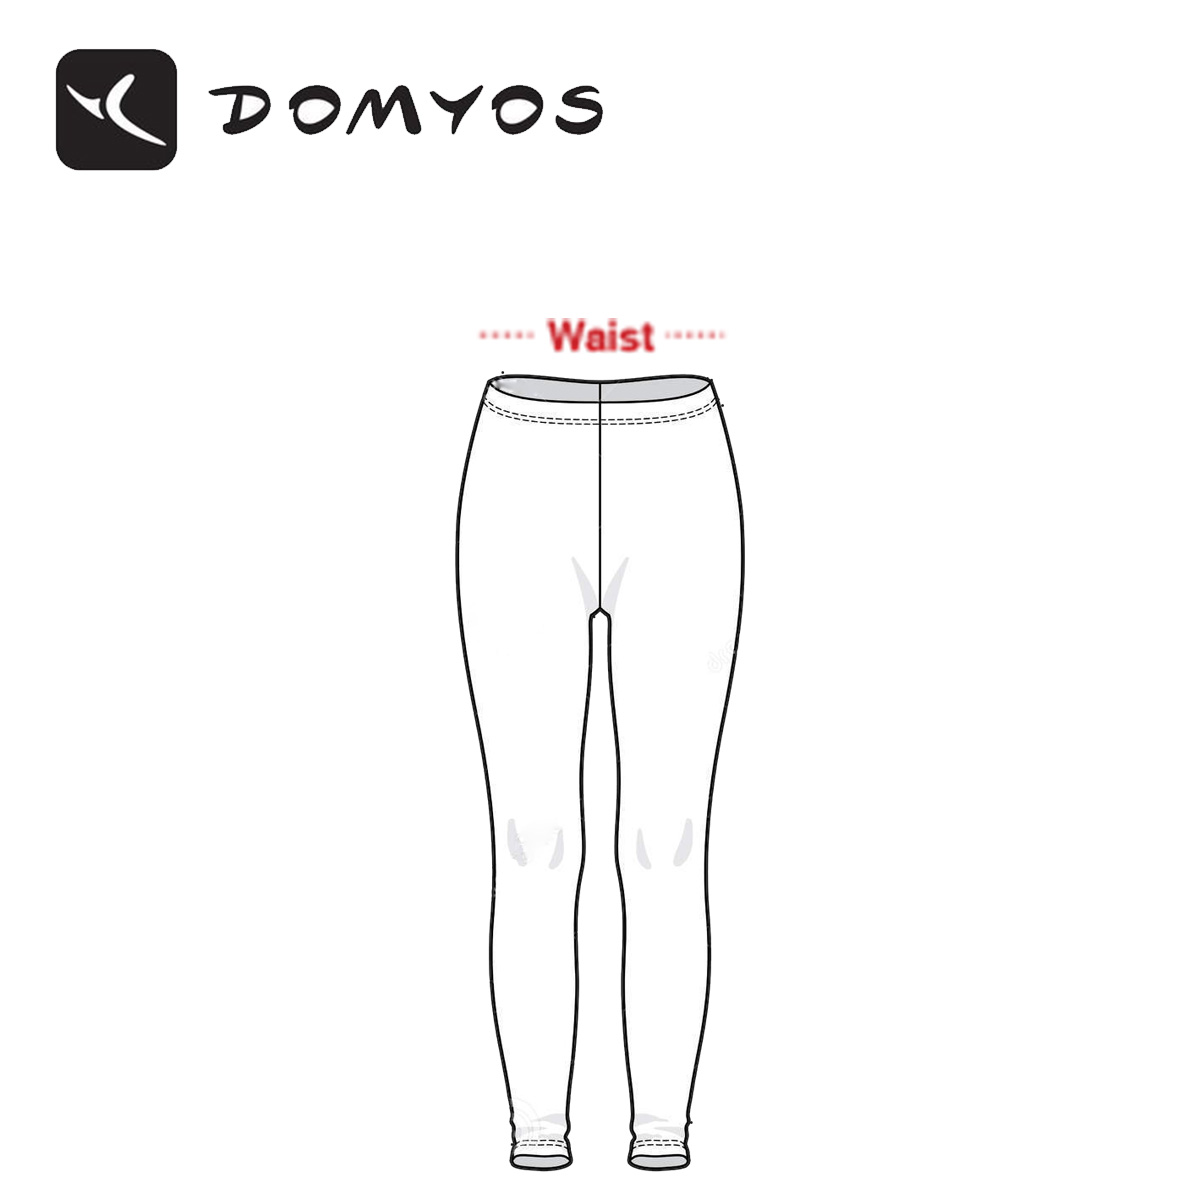 Domyos Size Chart